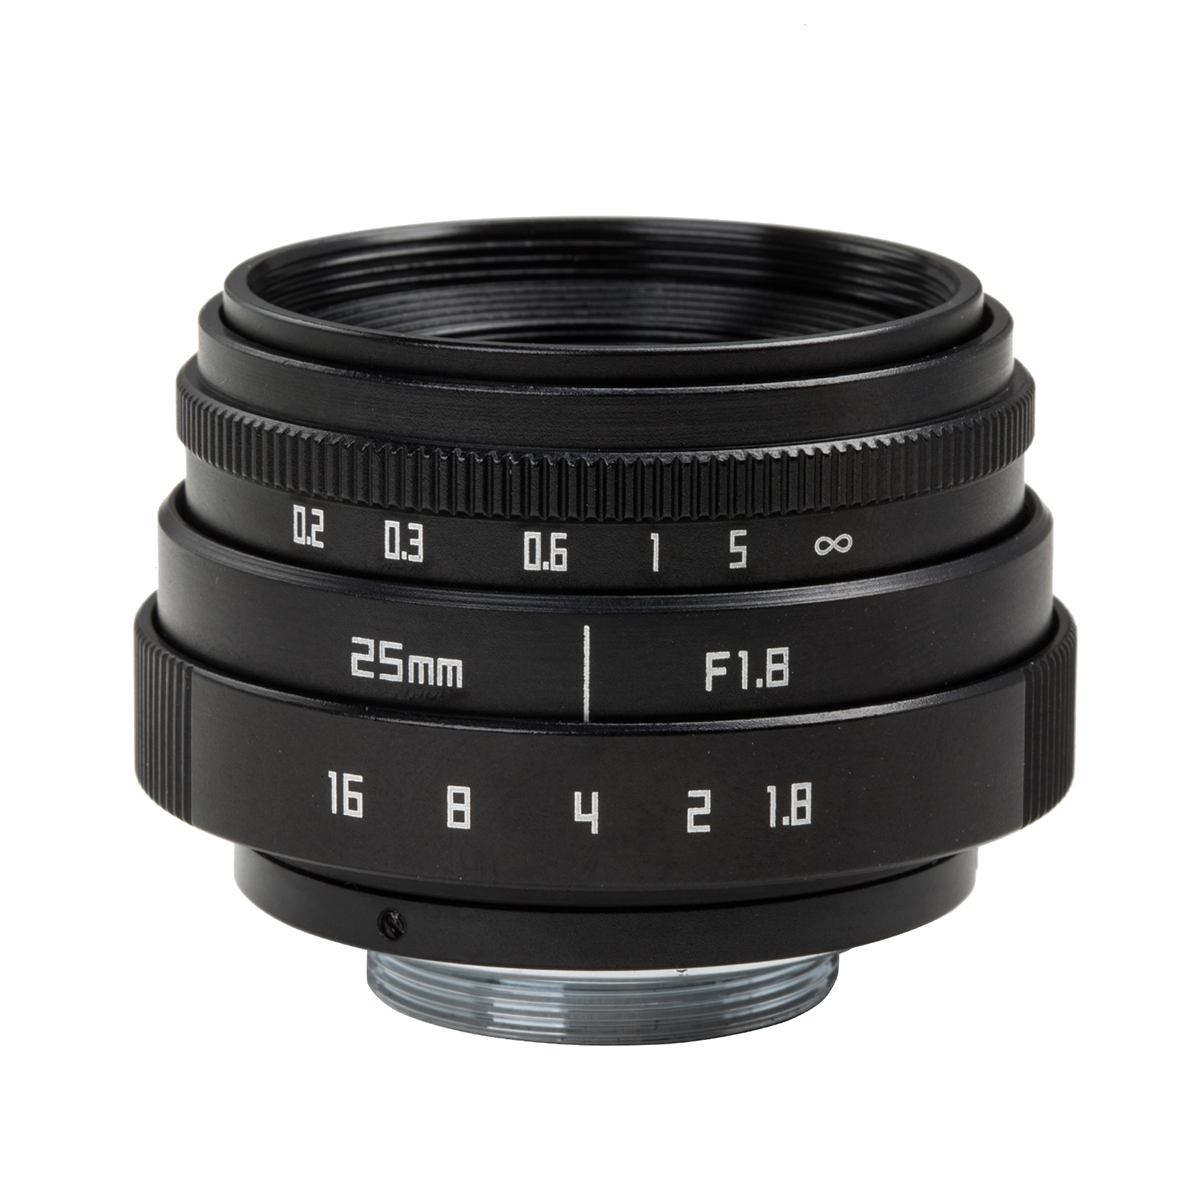 厂家直销 微单镜头25mm F1.8定焦相机镜头简易版C口- 黑色第Ⅵ代 CH011A